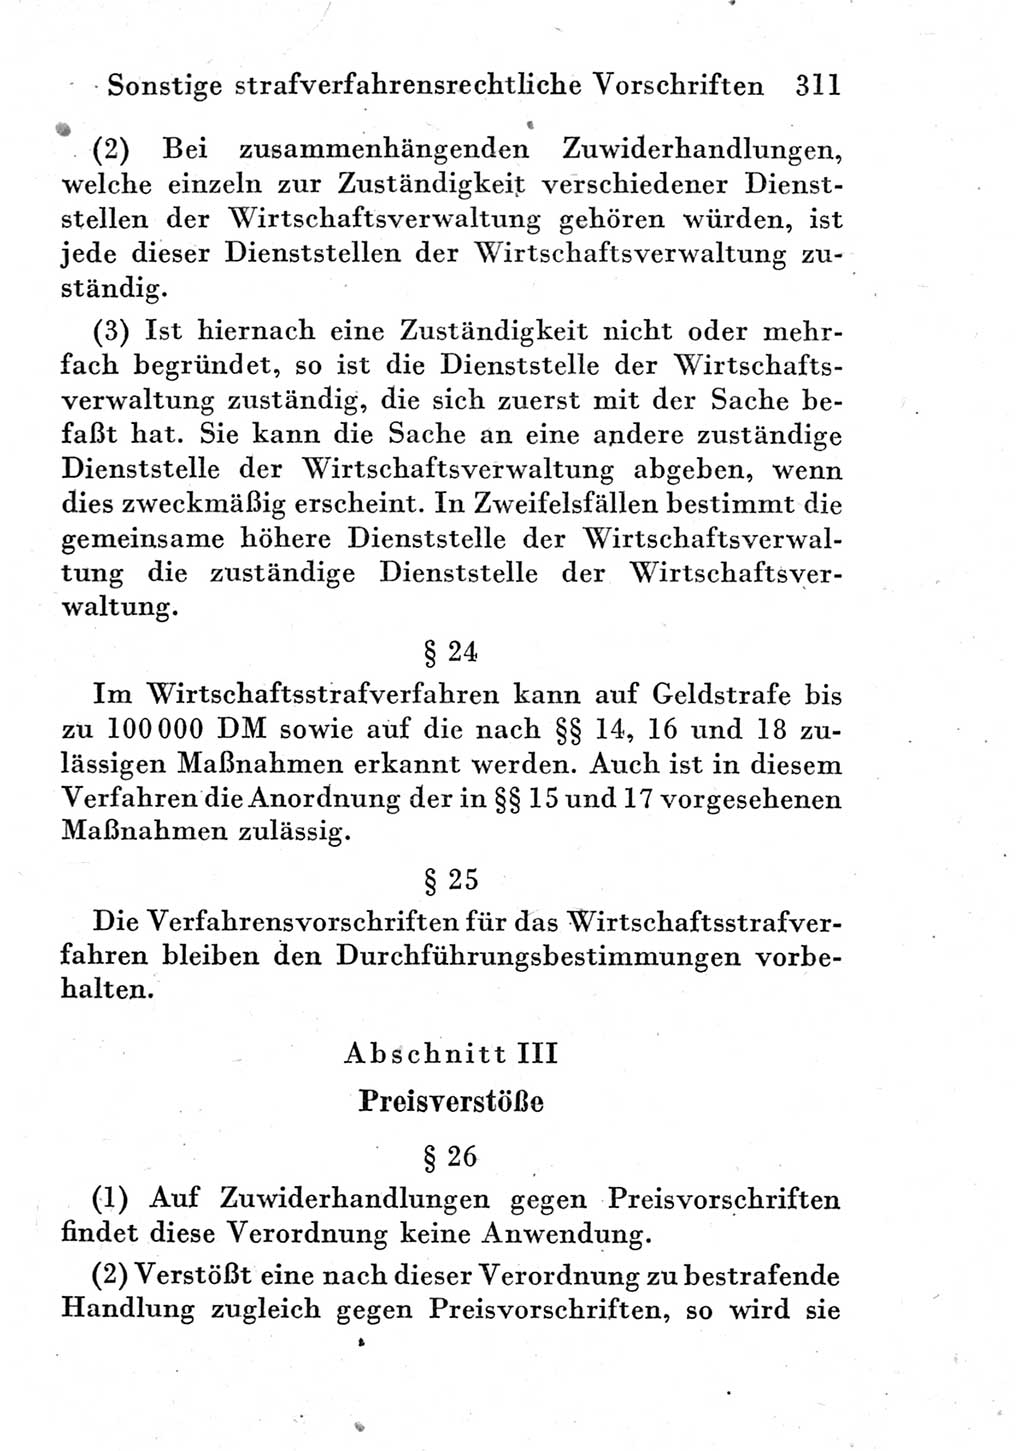 Strafprozeßordnung (StPO), Gerichtsverfassungsgesetz (GVG) und zahlreiche Nebengesetze der Deutschen Demokratischen Republik (DDR) 1950, Seite 311 (StPO GVG Ges. DDR 1950, S. 311)